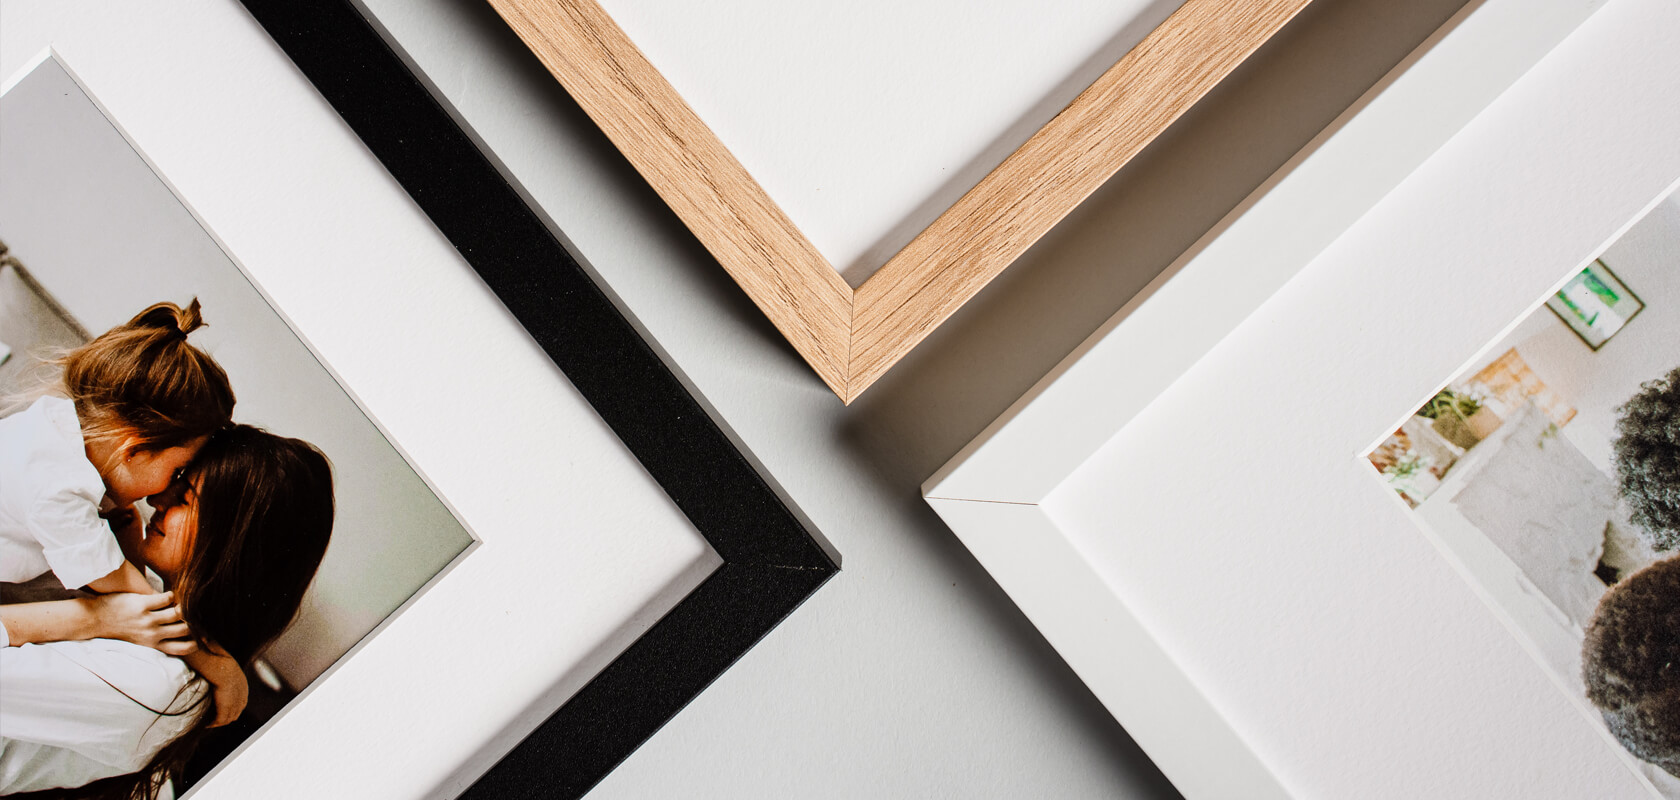 The frame is available in three colour options: black matt, white matt or oak.